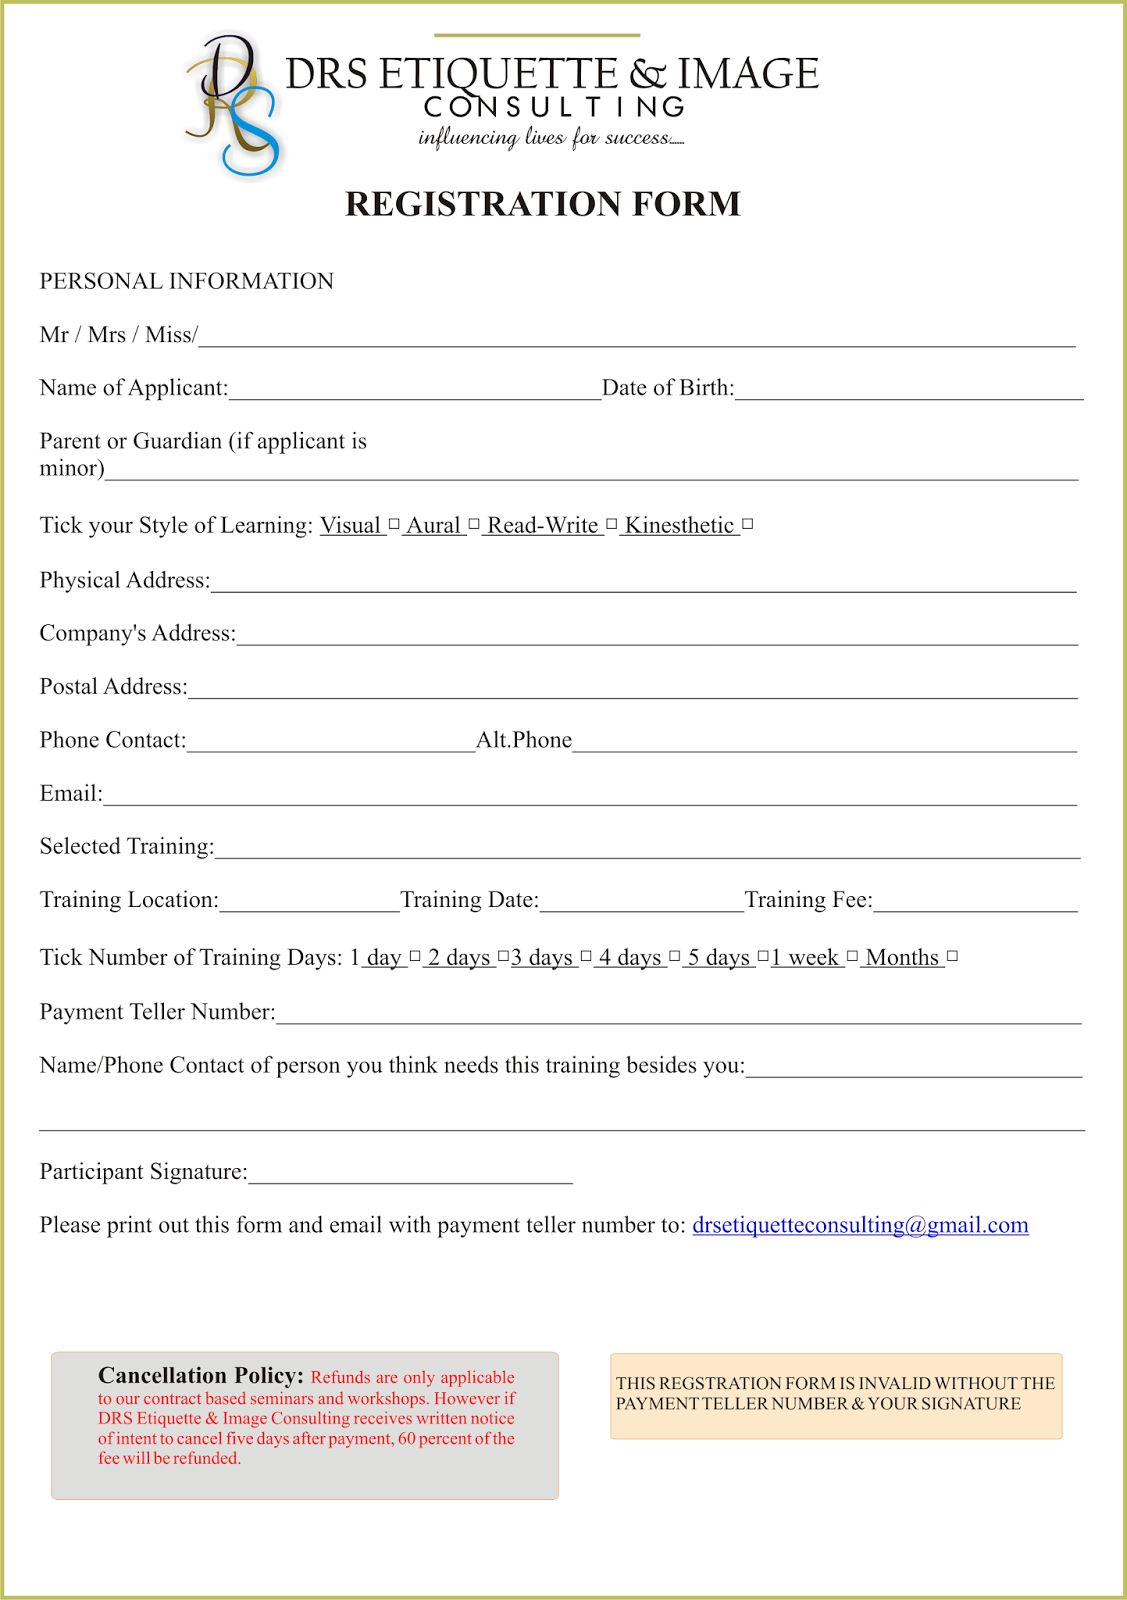 Registration Form DRS ETIQUETTE & IMAGE CONSULTING